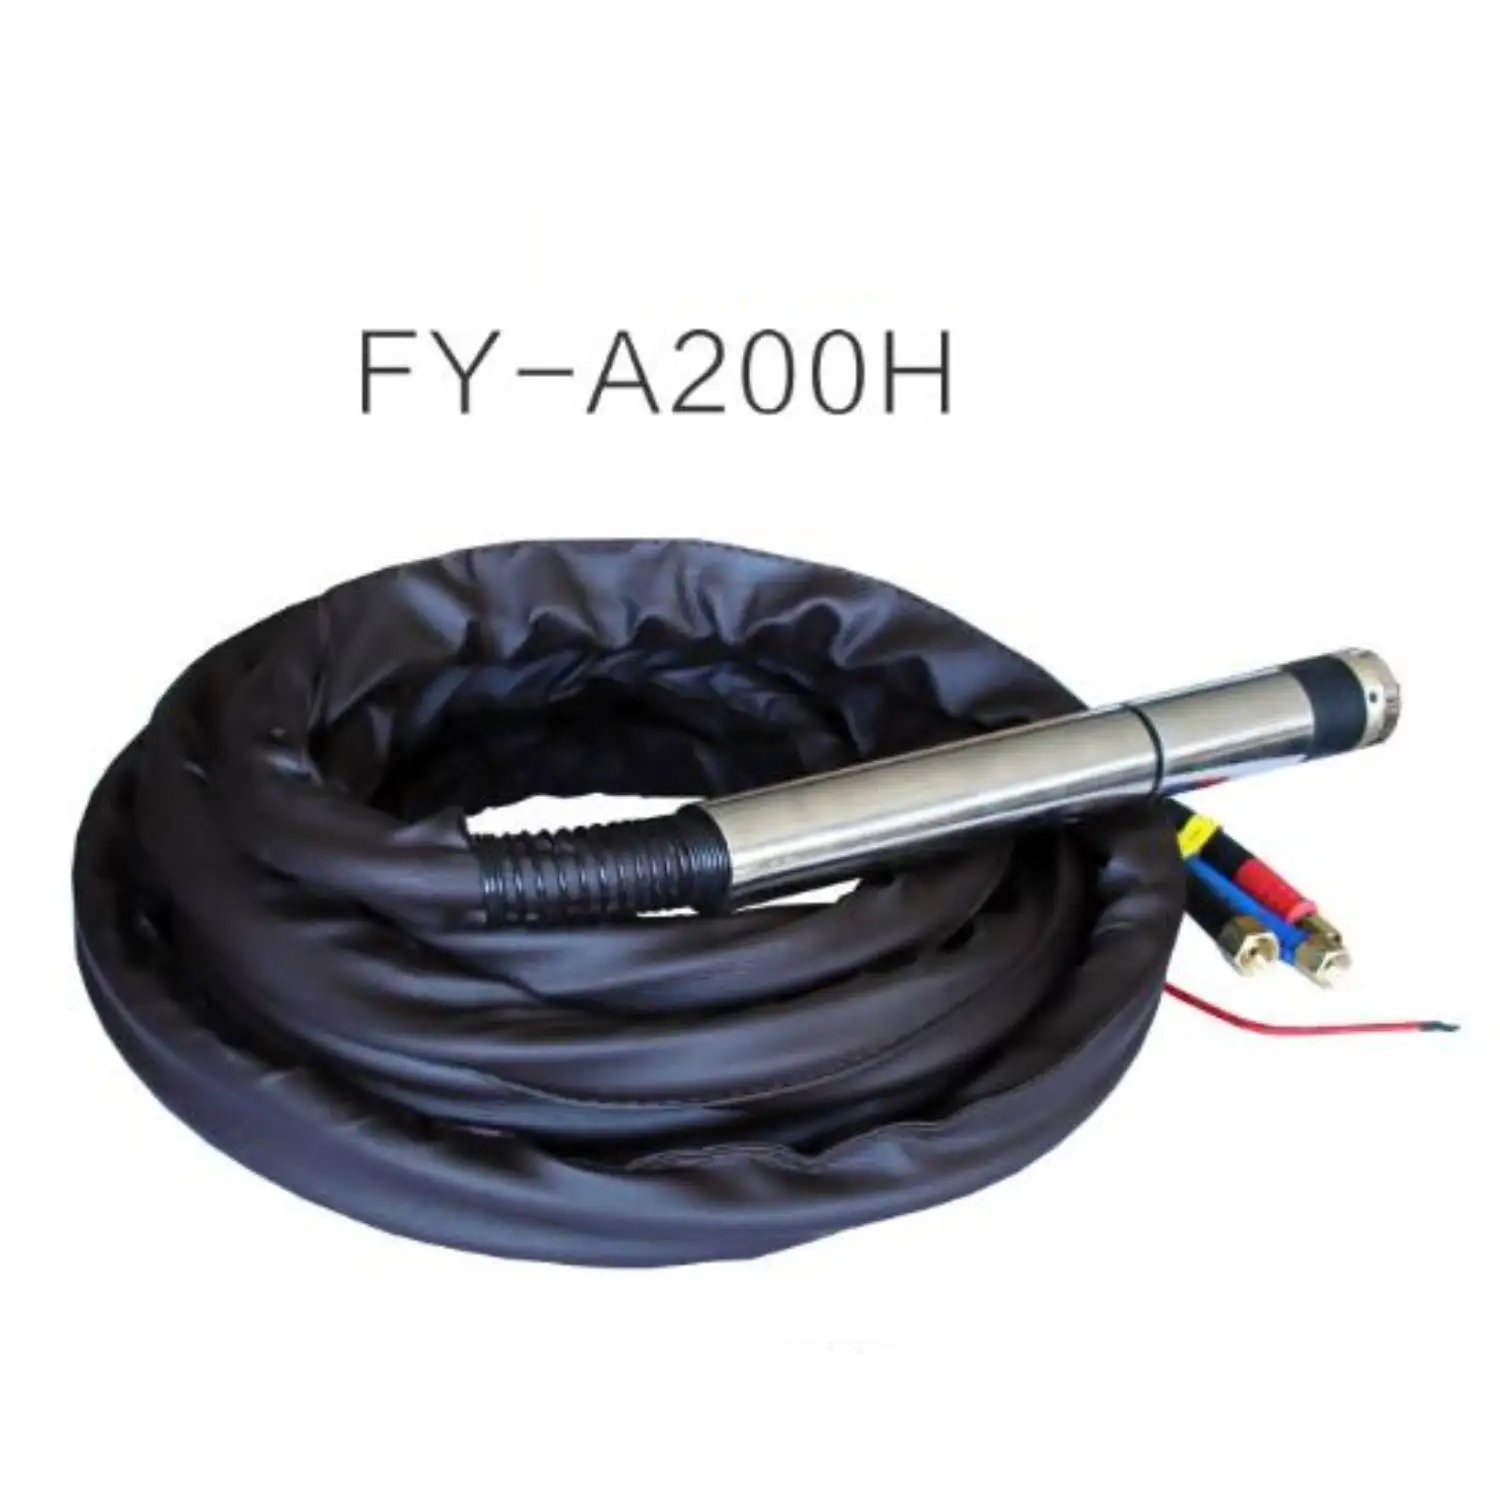 10 Meters FY-A200H FY-A200 A200H 200P 200A Water Cooled CNC Huayuan Plasma Cutter Torch Head Electrode Tip enlarge